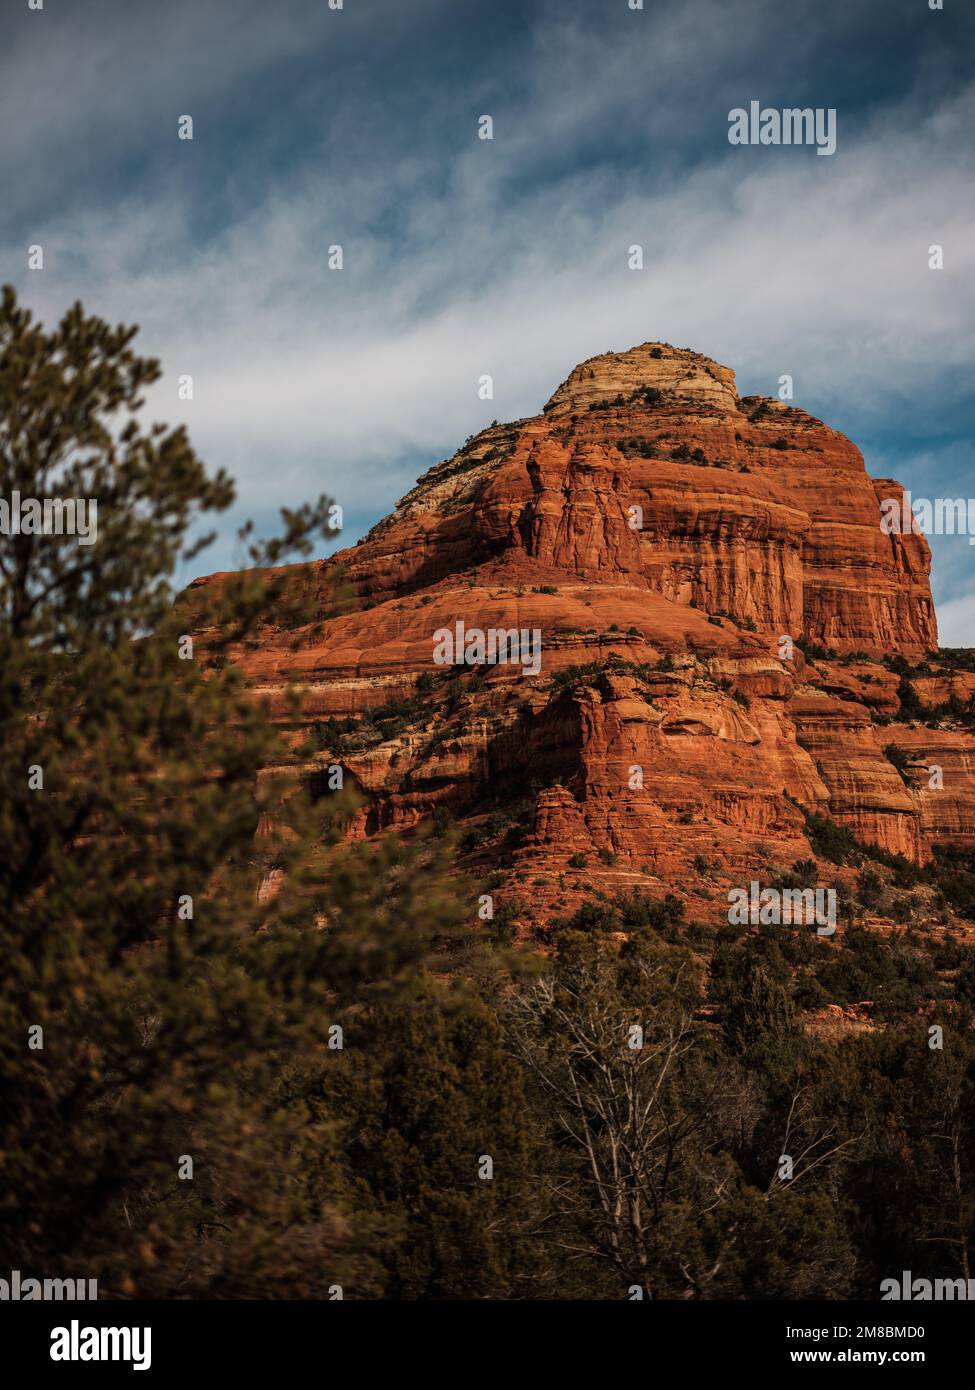 Felsformationen in Sedona, Arizona. Die Gegend ist beliebt bei Wanderern und all denjenigen, die eine spirituelle Verbindung suchen, die die Gegend haben soll. Stockfoto